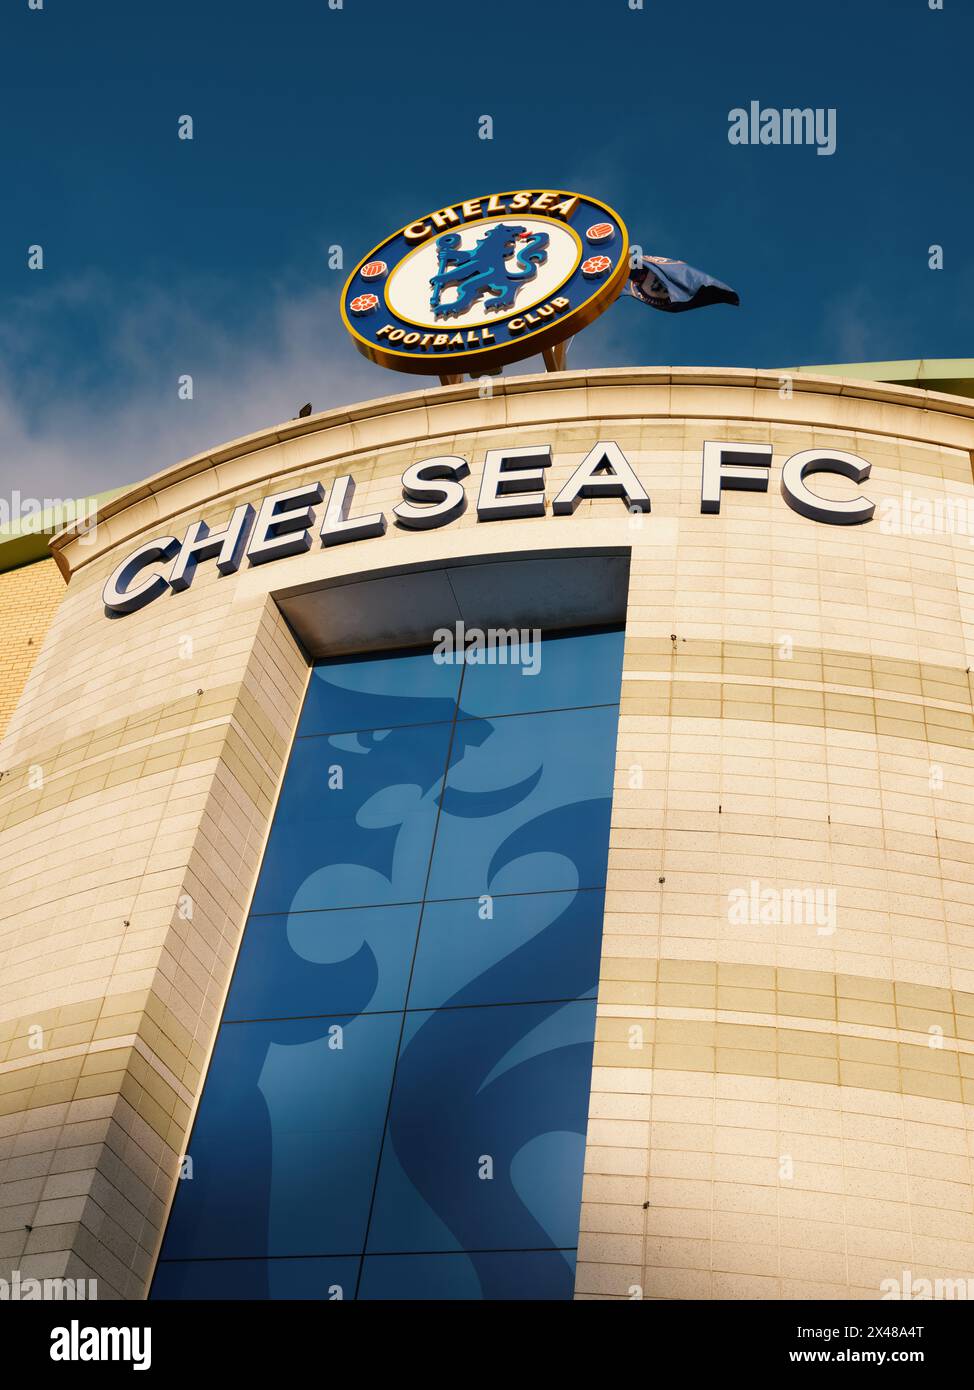 Stamford Bridge, le stade du Chelsea Football Club et le badge vous accueillent au West Stand à Chelsea, Londres Angleterre, Royaume-Uni Banque D'Images